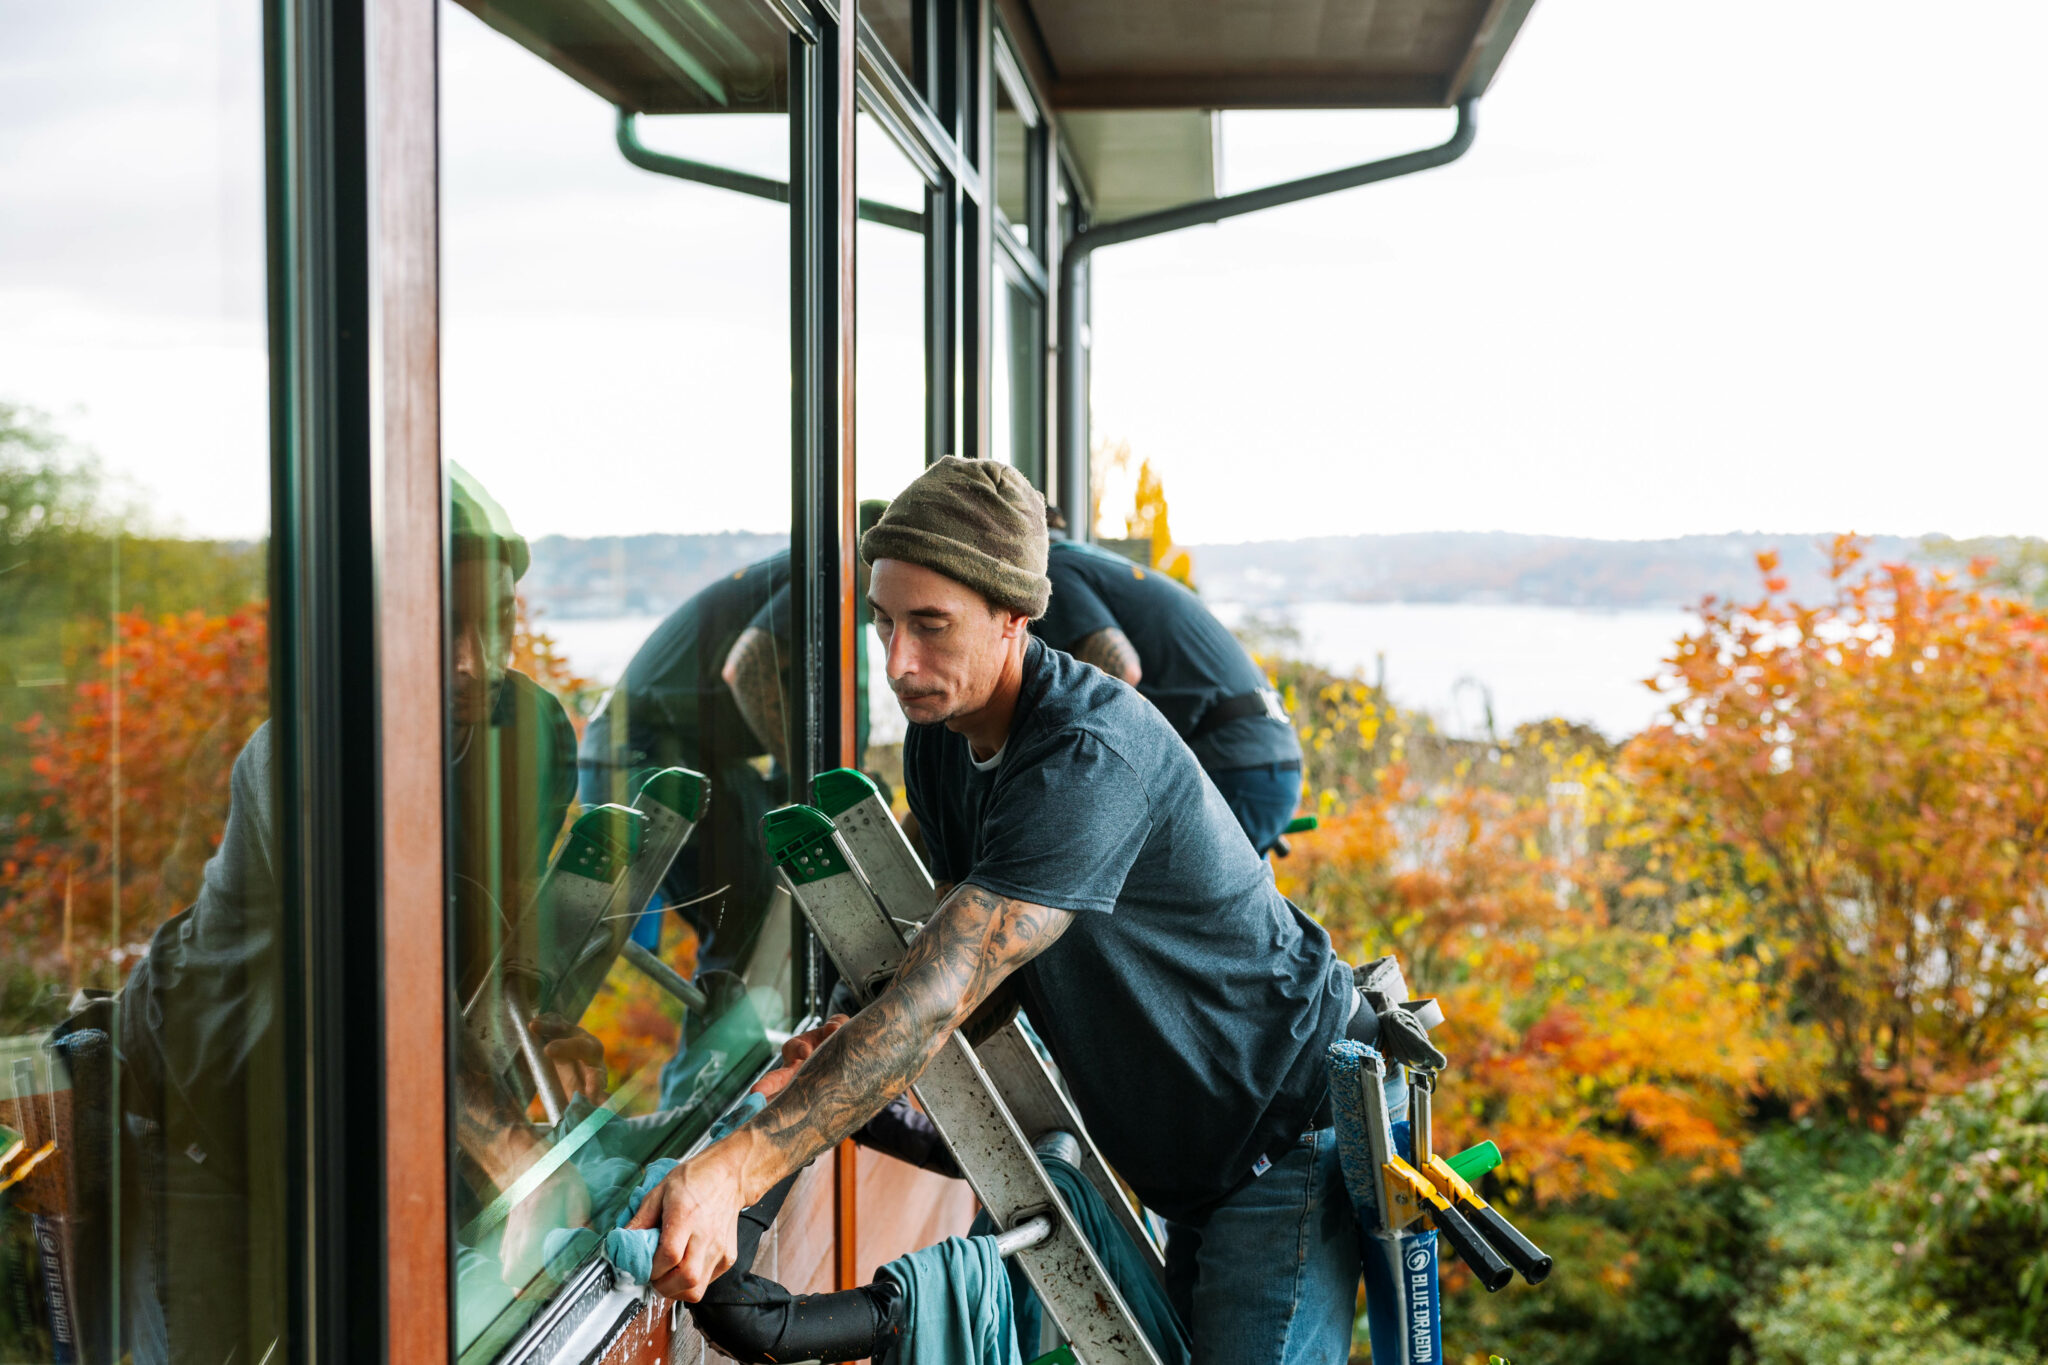 Better Window Cleaning Seattle